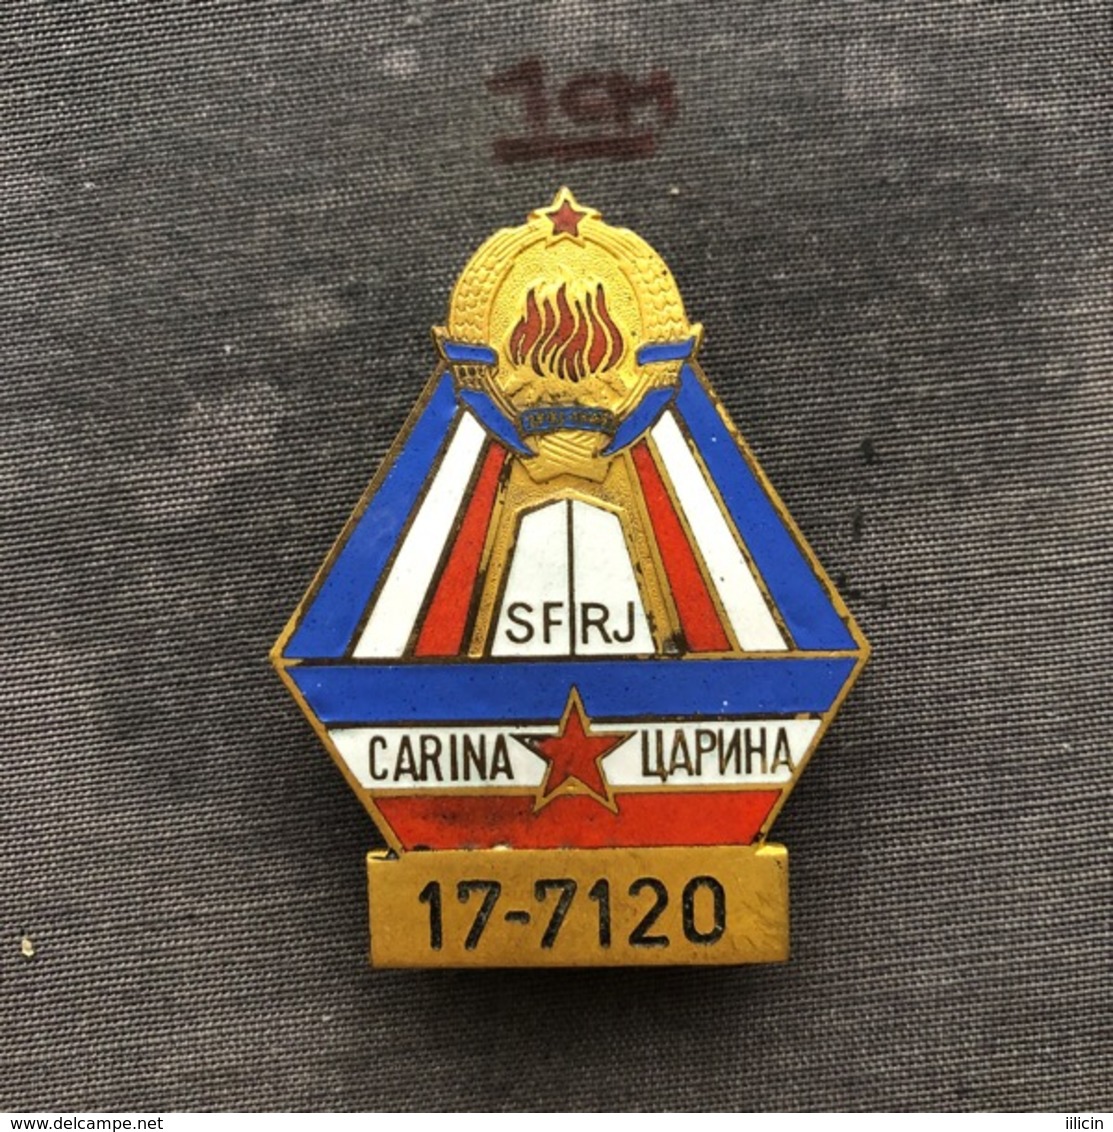 Badge (Pin) ZN008099 - Military (Army) Insignia Border Patrol Carina Yugoslavia #17-7120 - Militaria